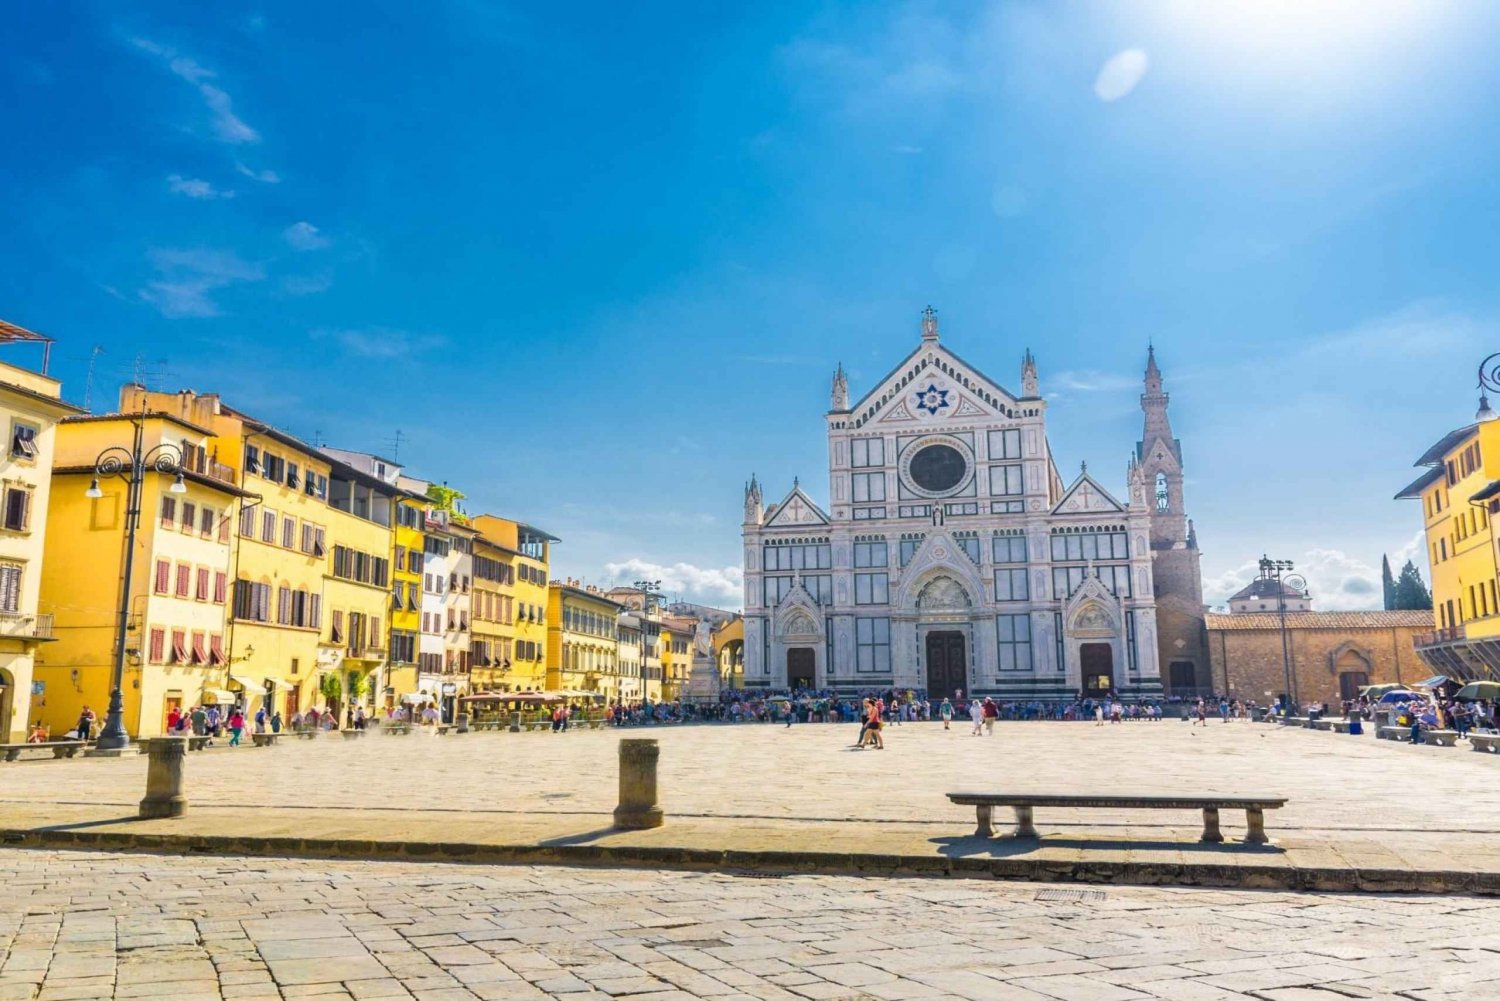 Omvisning i domkirken i Firenze med gamlebyen og Santa Croce